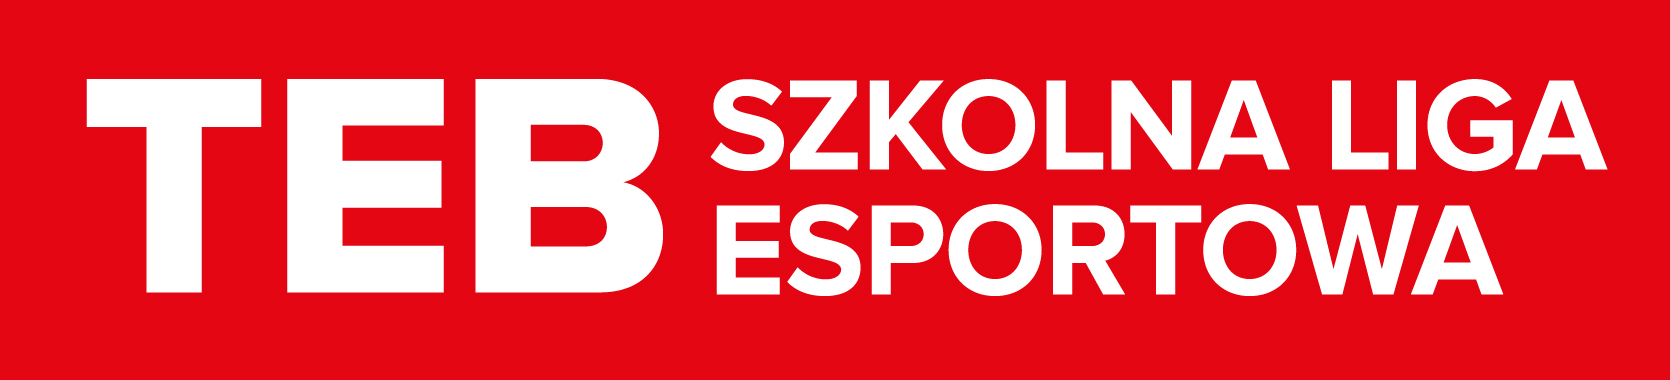 TEB Szkolna Liga E-sportowa – SEZON 2019/20thumbnail